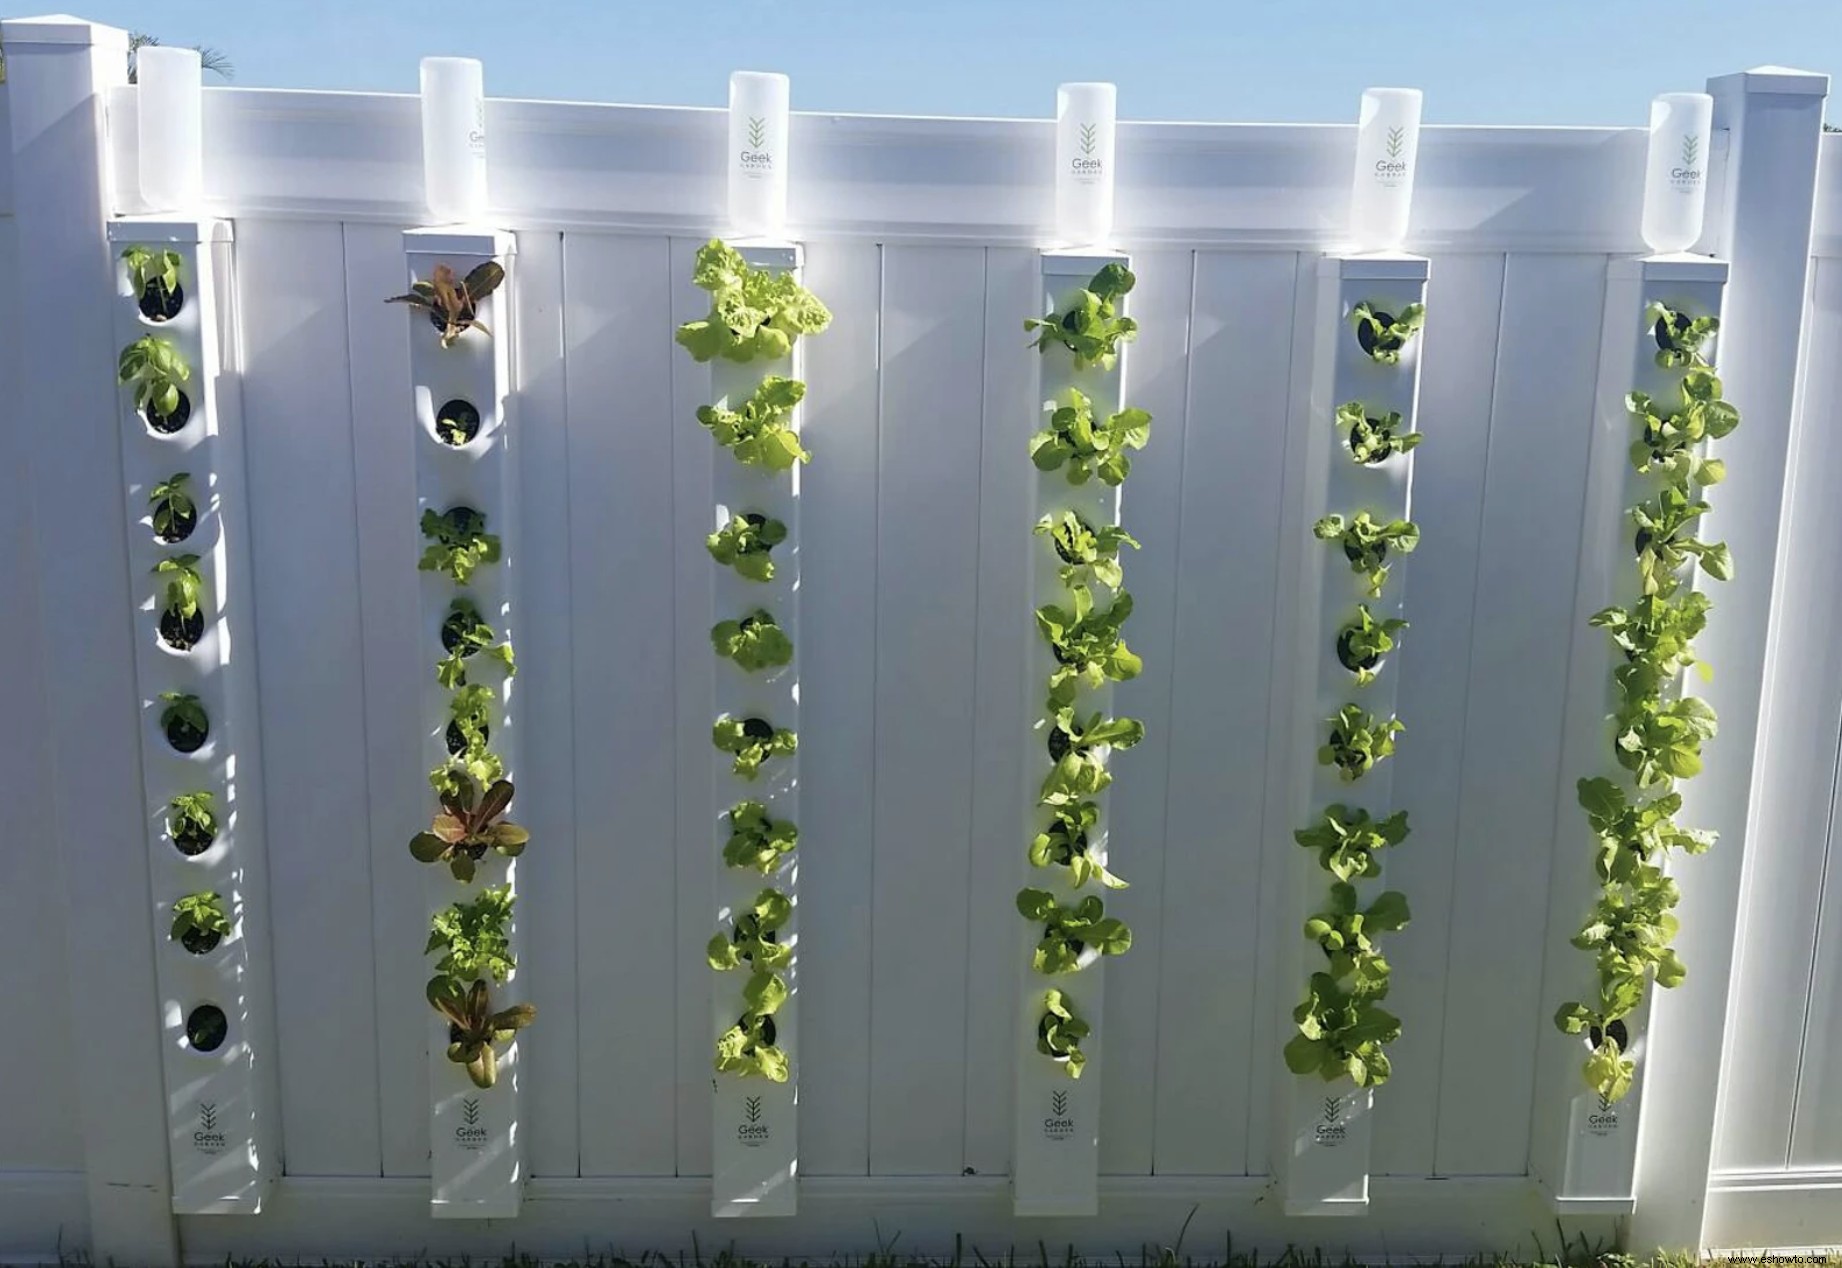 La agricultura vertical es una forma de ahorrar espacio para cultivar frutas y verduras en el hogar:así es como 